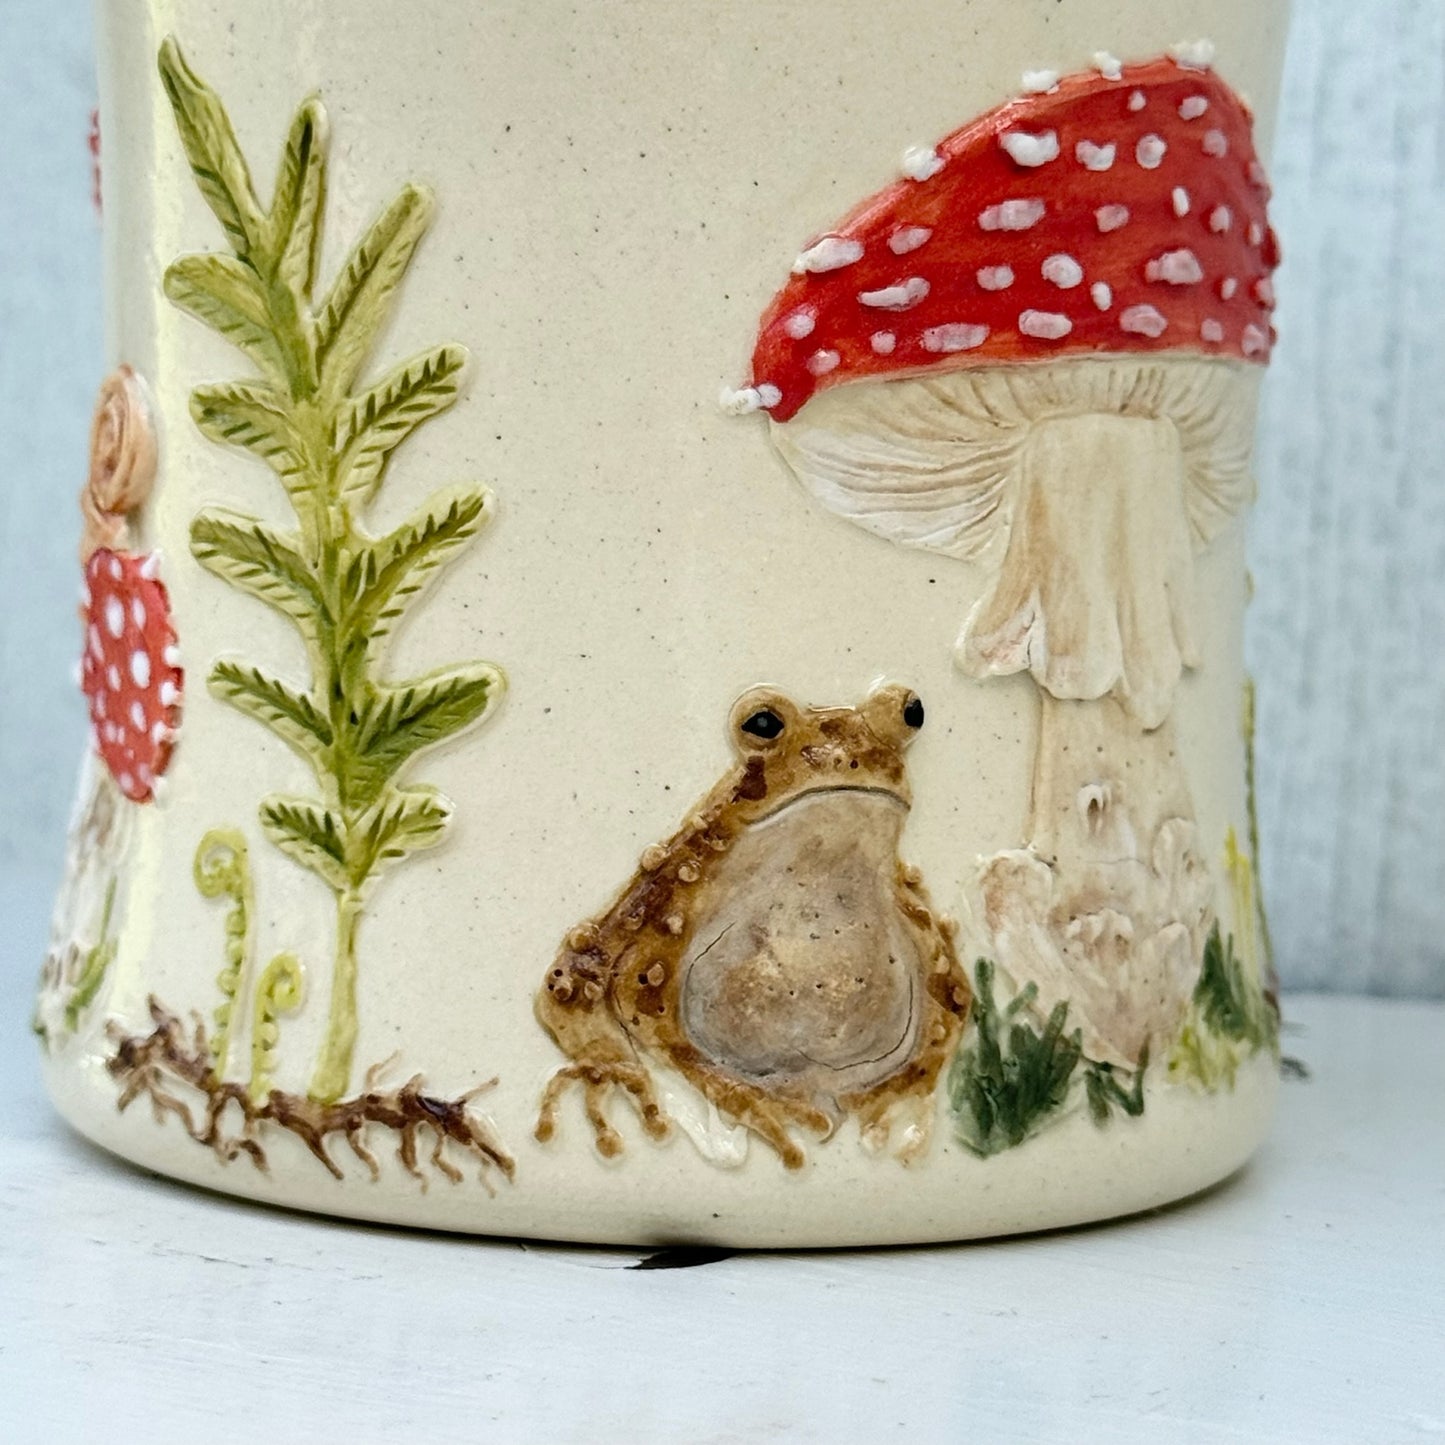 Mushroom & Toad Botanical Mug #4054